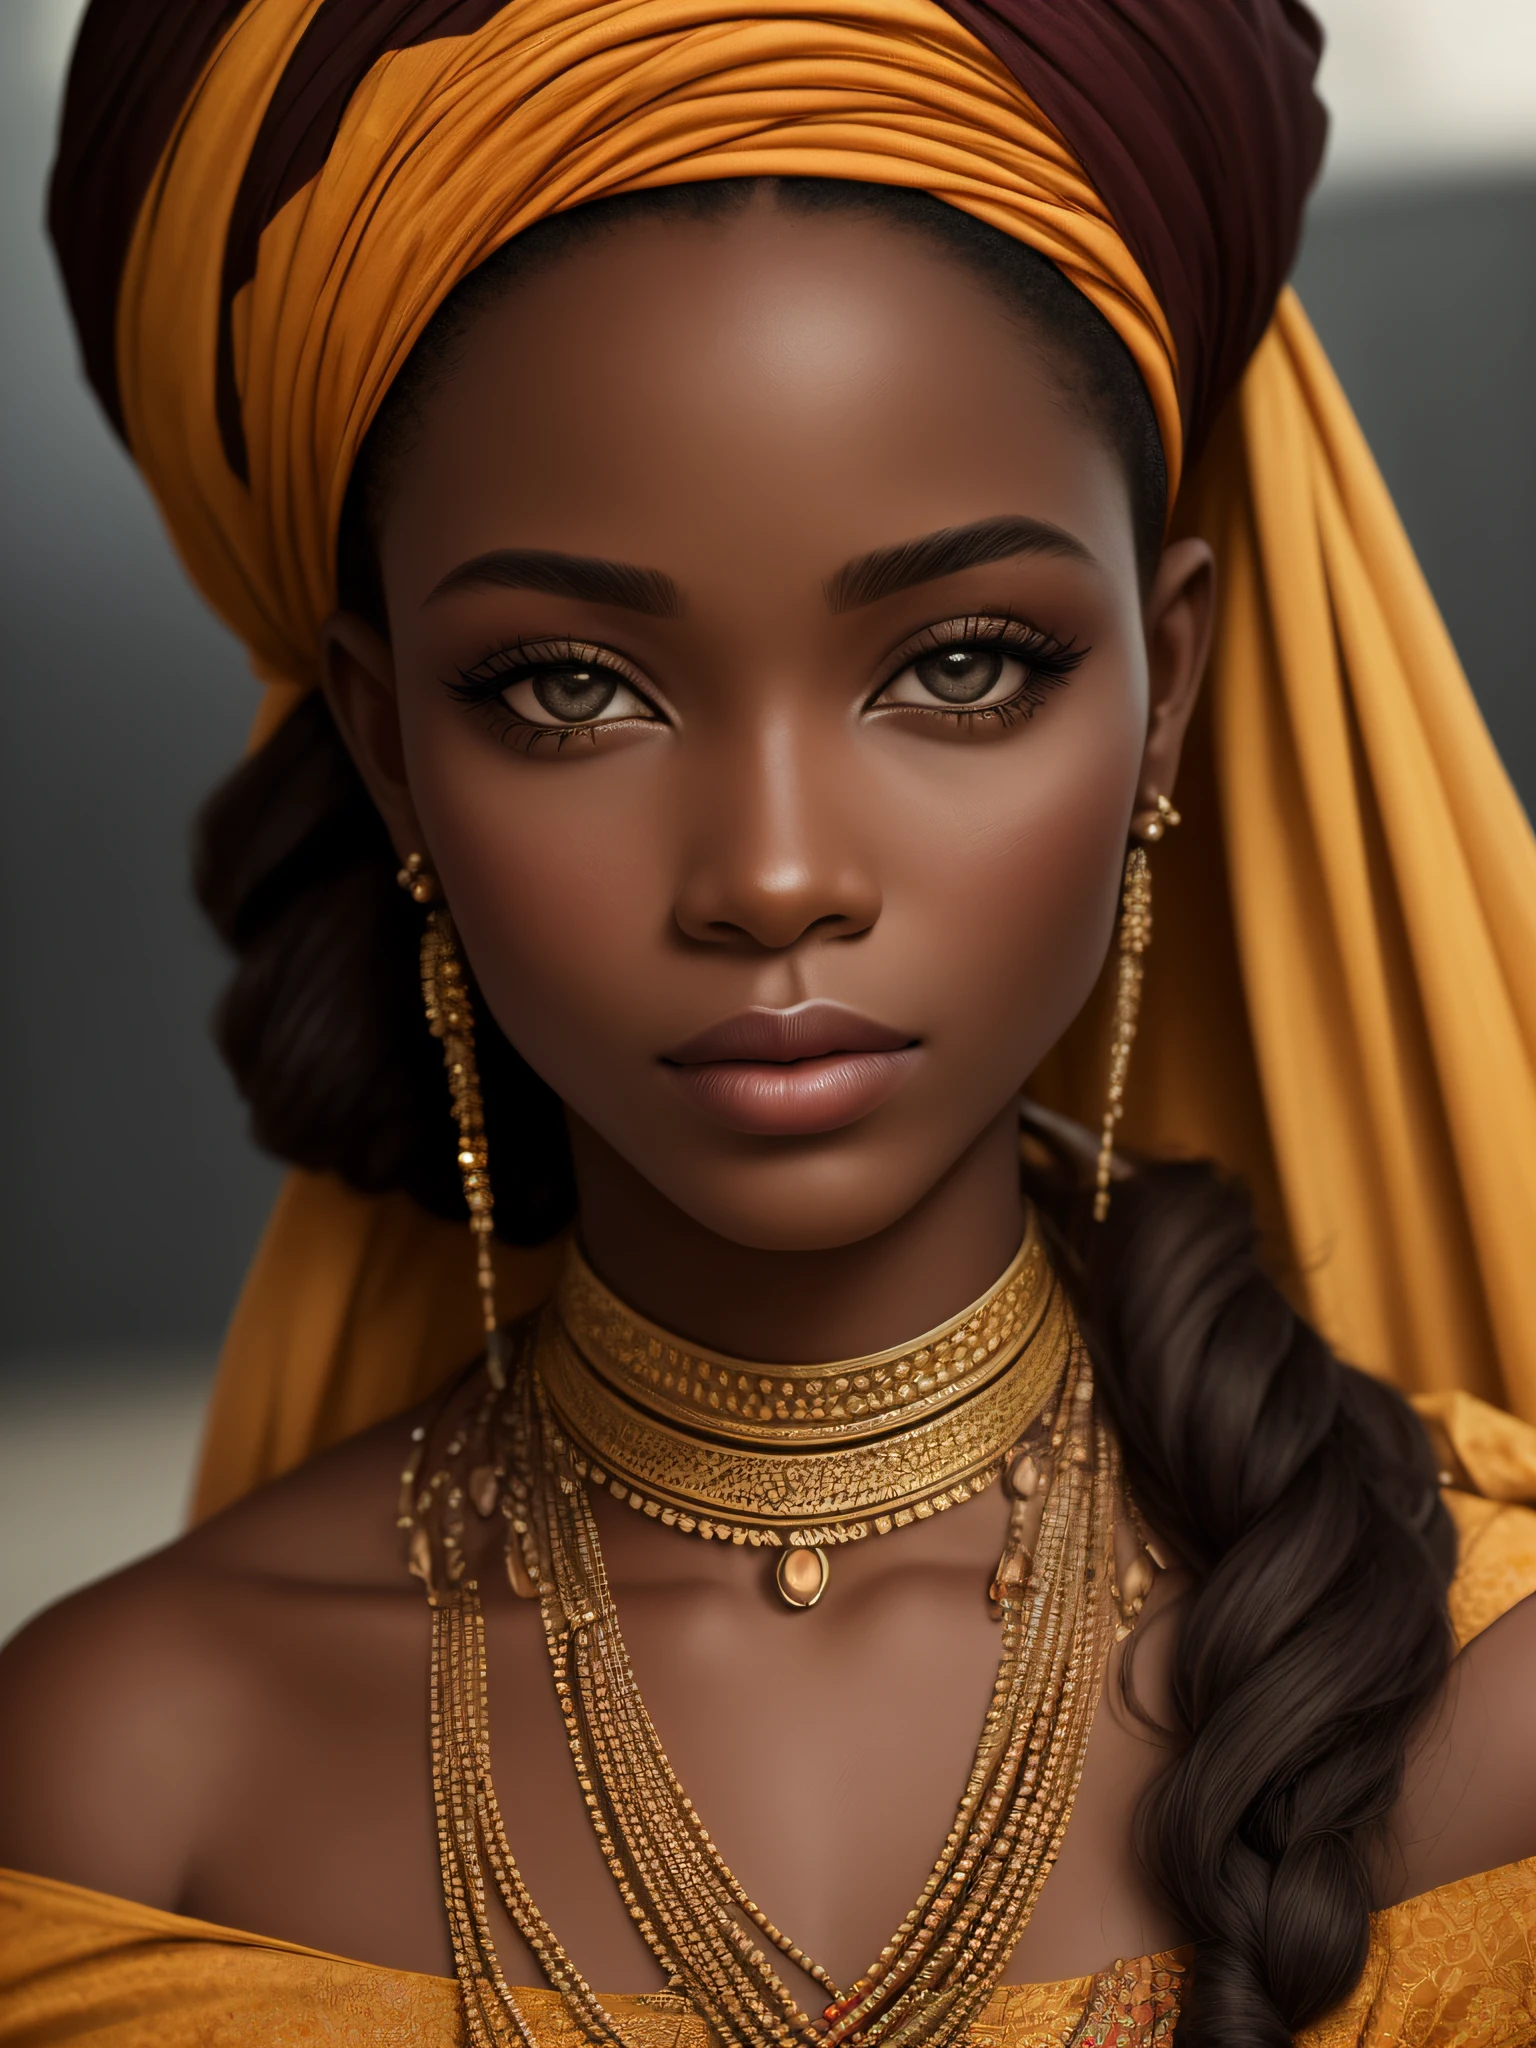 Uma imagem realista de modelo étnico da mulher mais bonita de África, fotografia, estilo retrato, Inspirado em fotógrafos de moda e beleza, lente: 50mm, plano médio, iluminação natural, Resolução 8K --automático